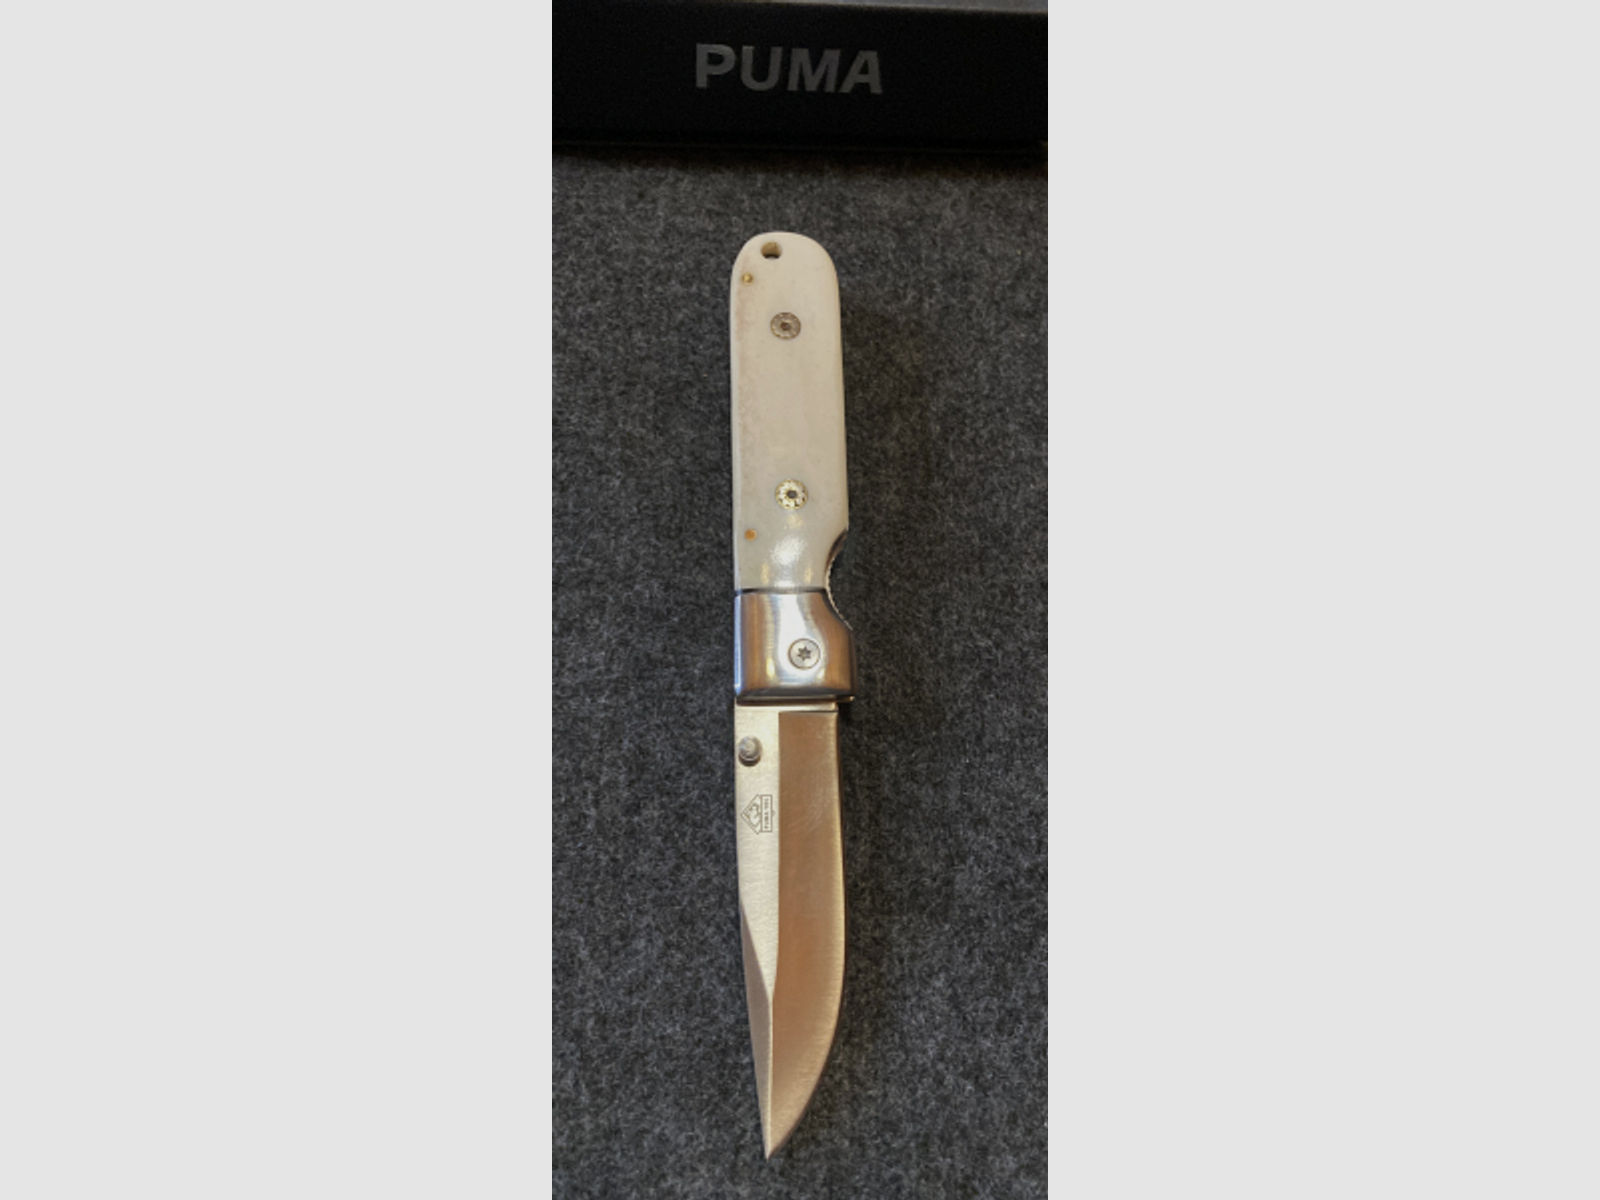 Puma Messer Taschenmesser Sammlermesser